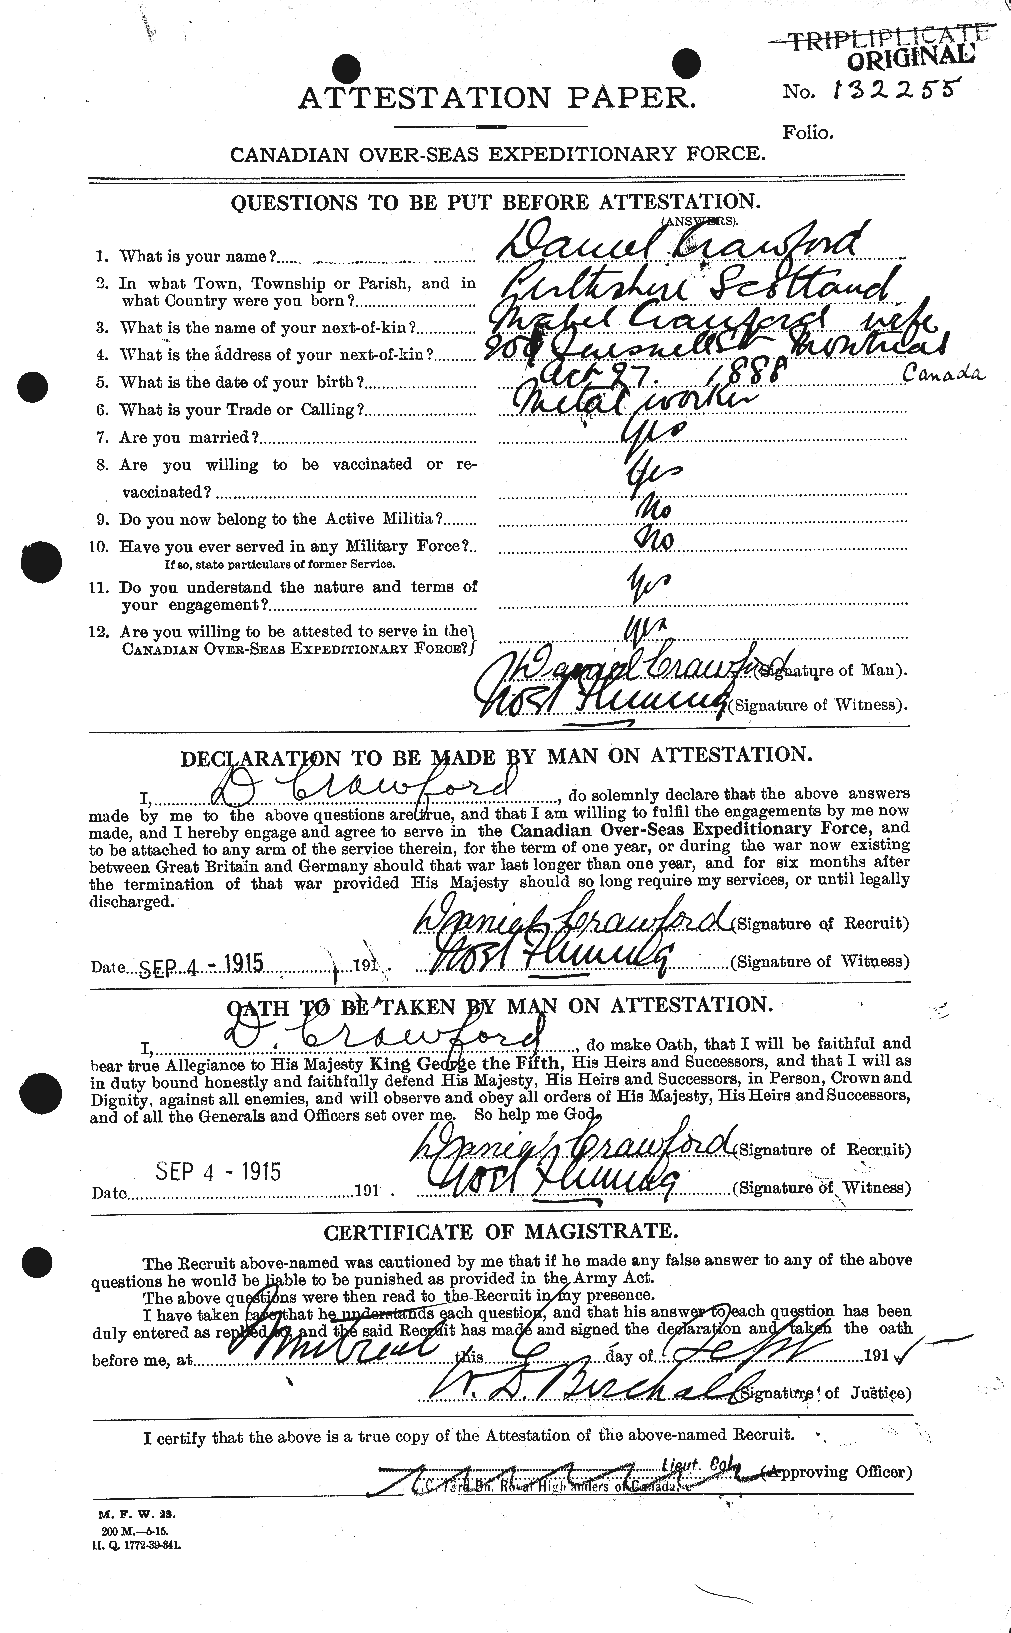 Dossiers du Personnel de la Première Guerre mondiale - CEC 060823a